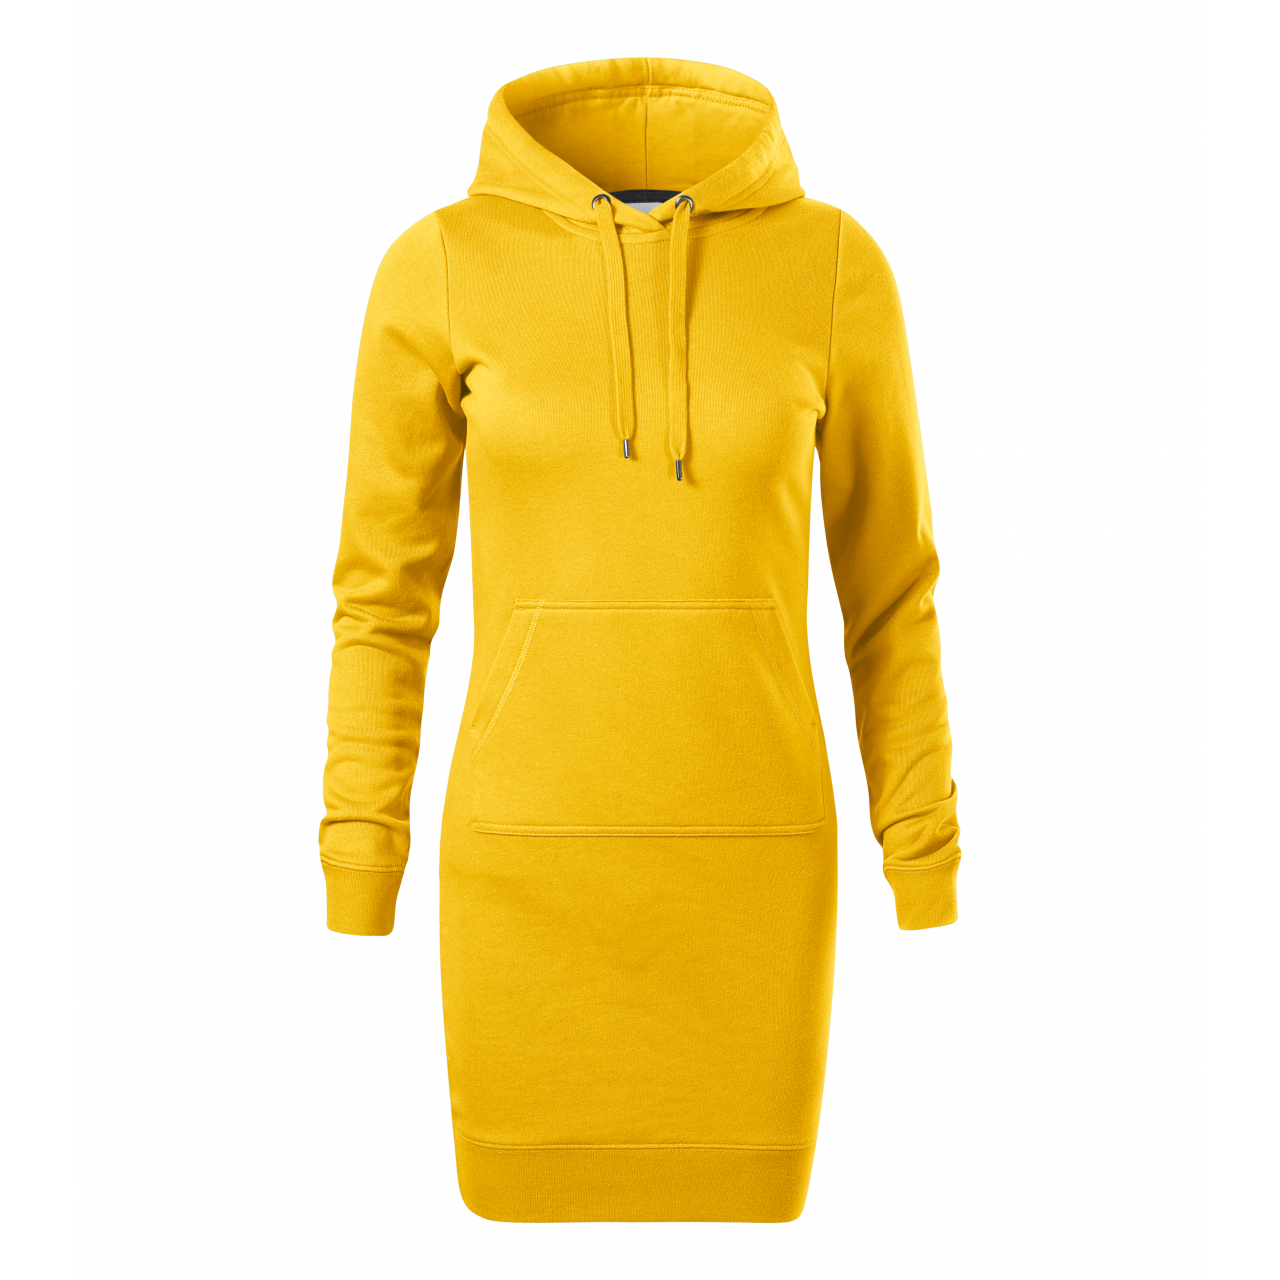 Šaty dámské Malfini Snap - žluté, XS